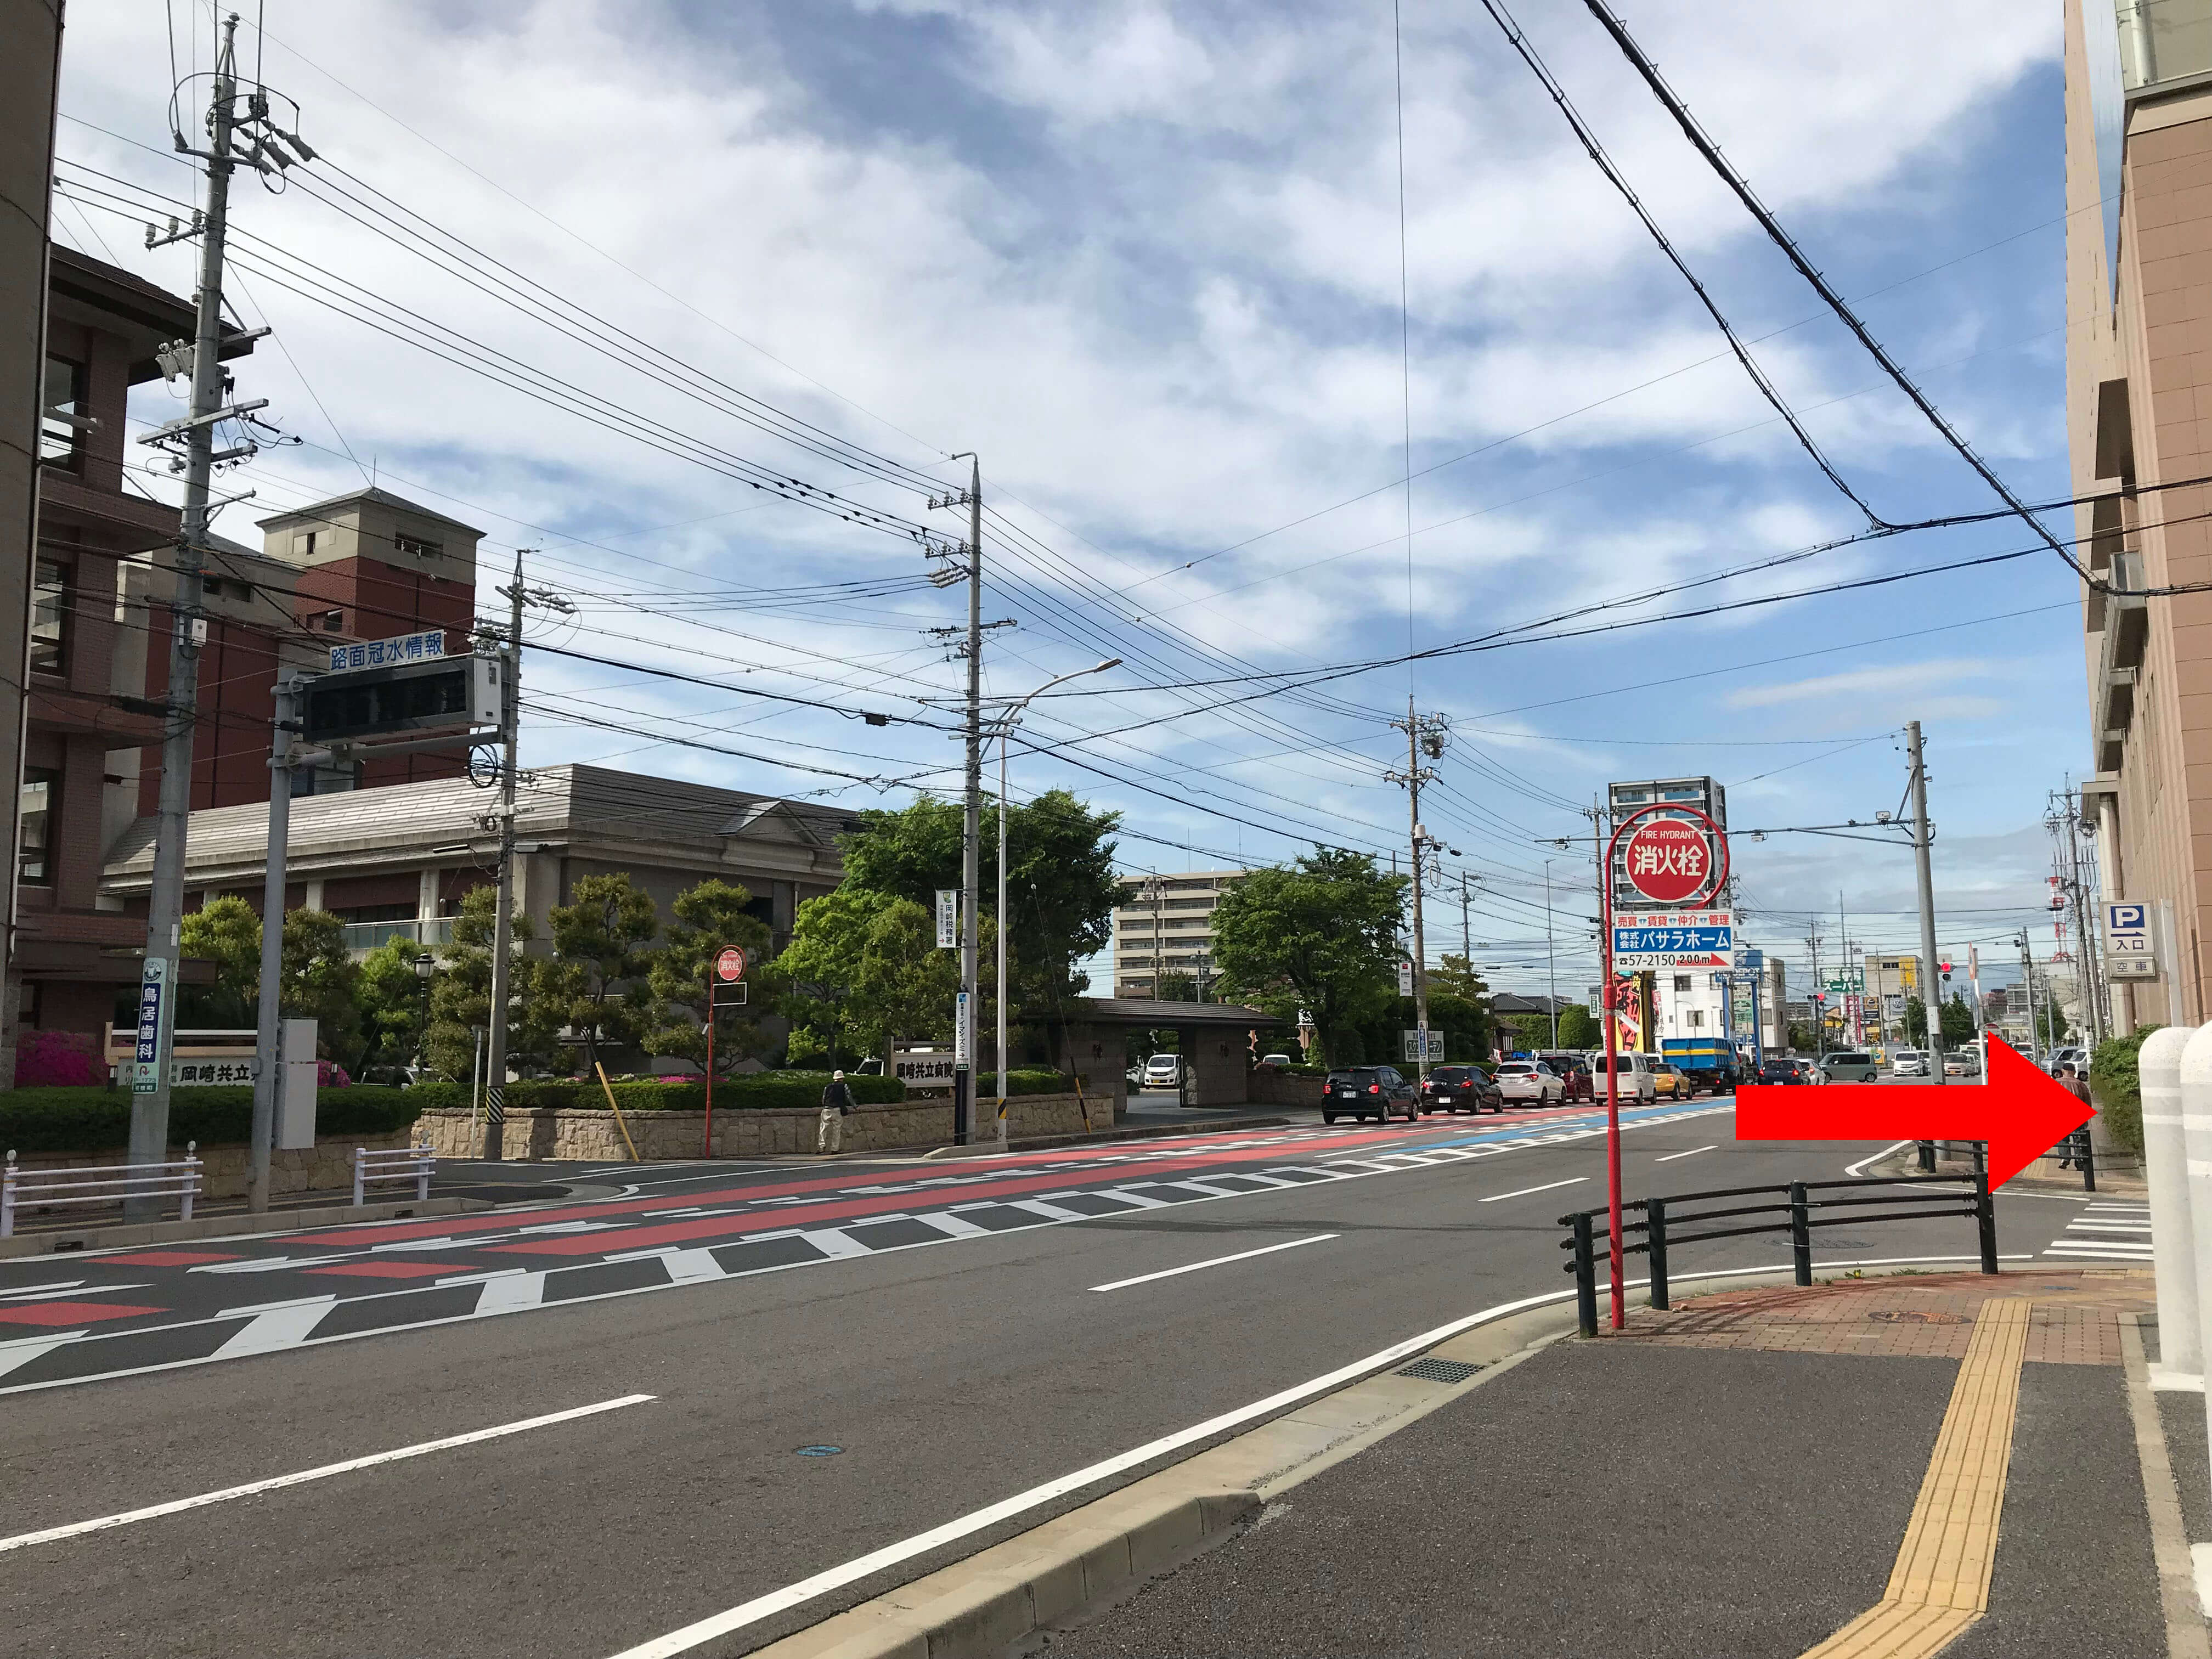 ④左手に岡崎共立病院、前方に岡崎市シビックセンター・岡崎合同庁舎がある通りを右折